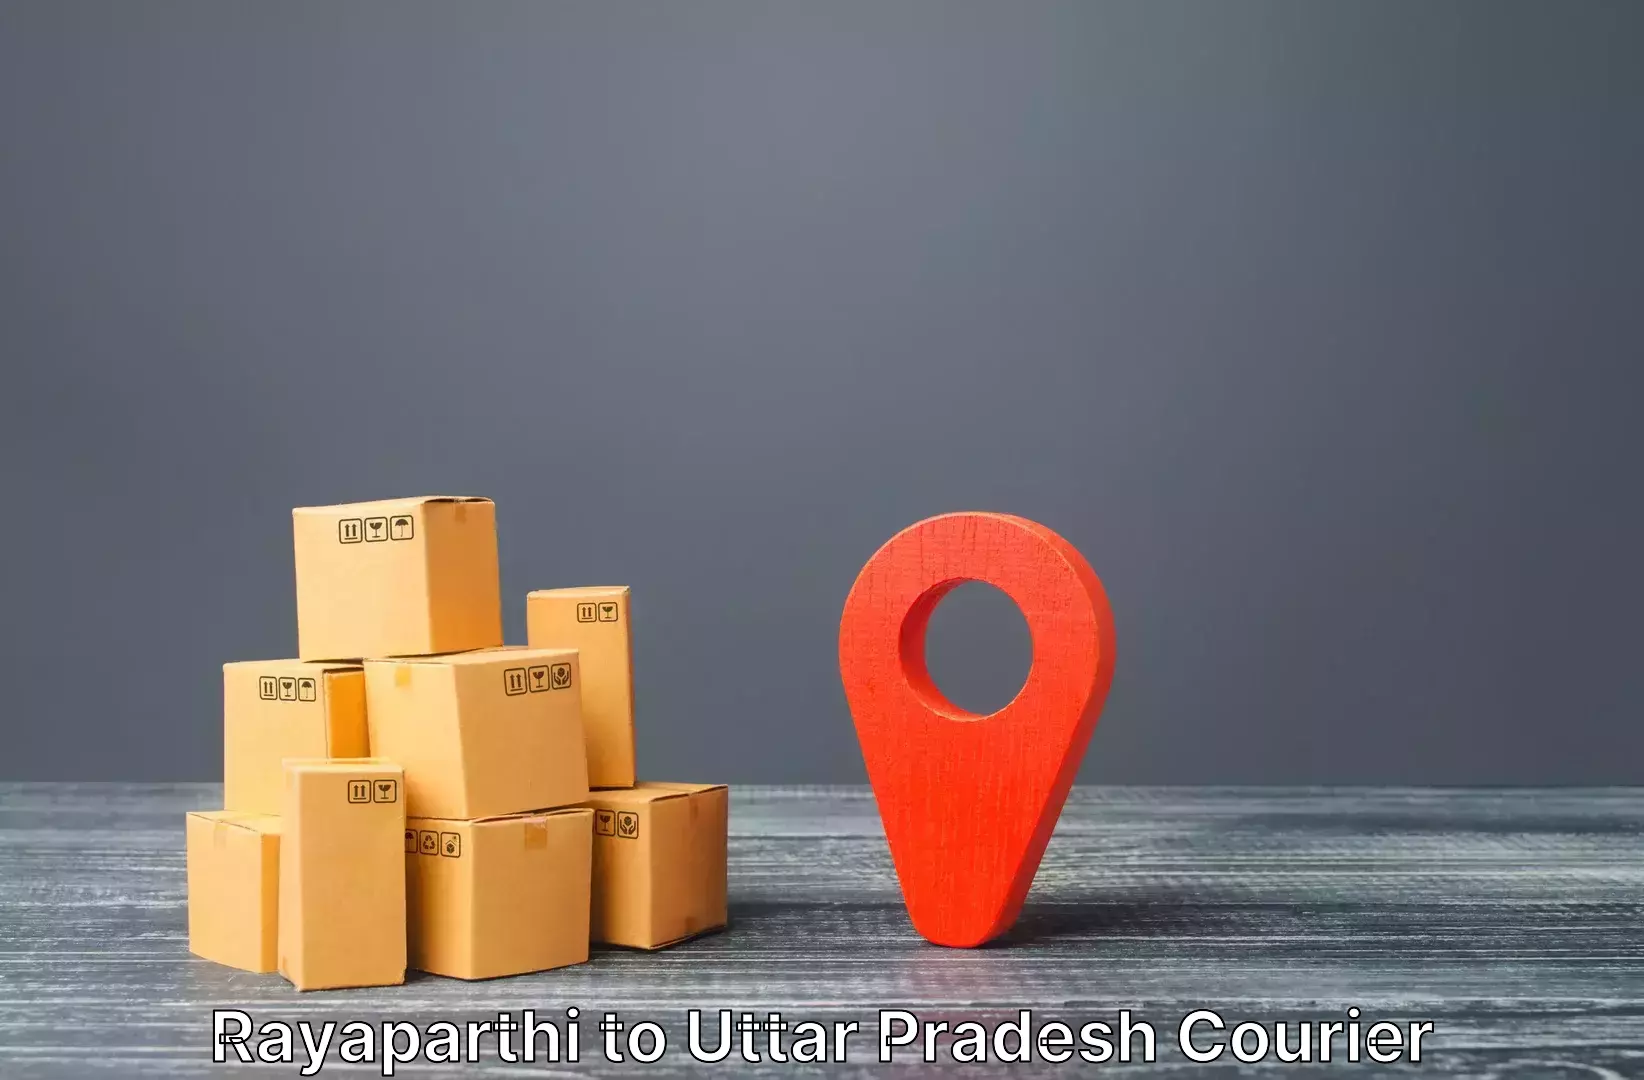 Luggage delivery system Rayaparthi to Bhinga